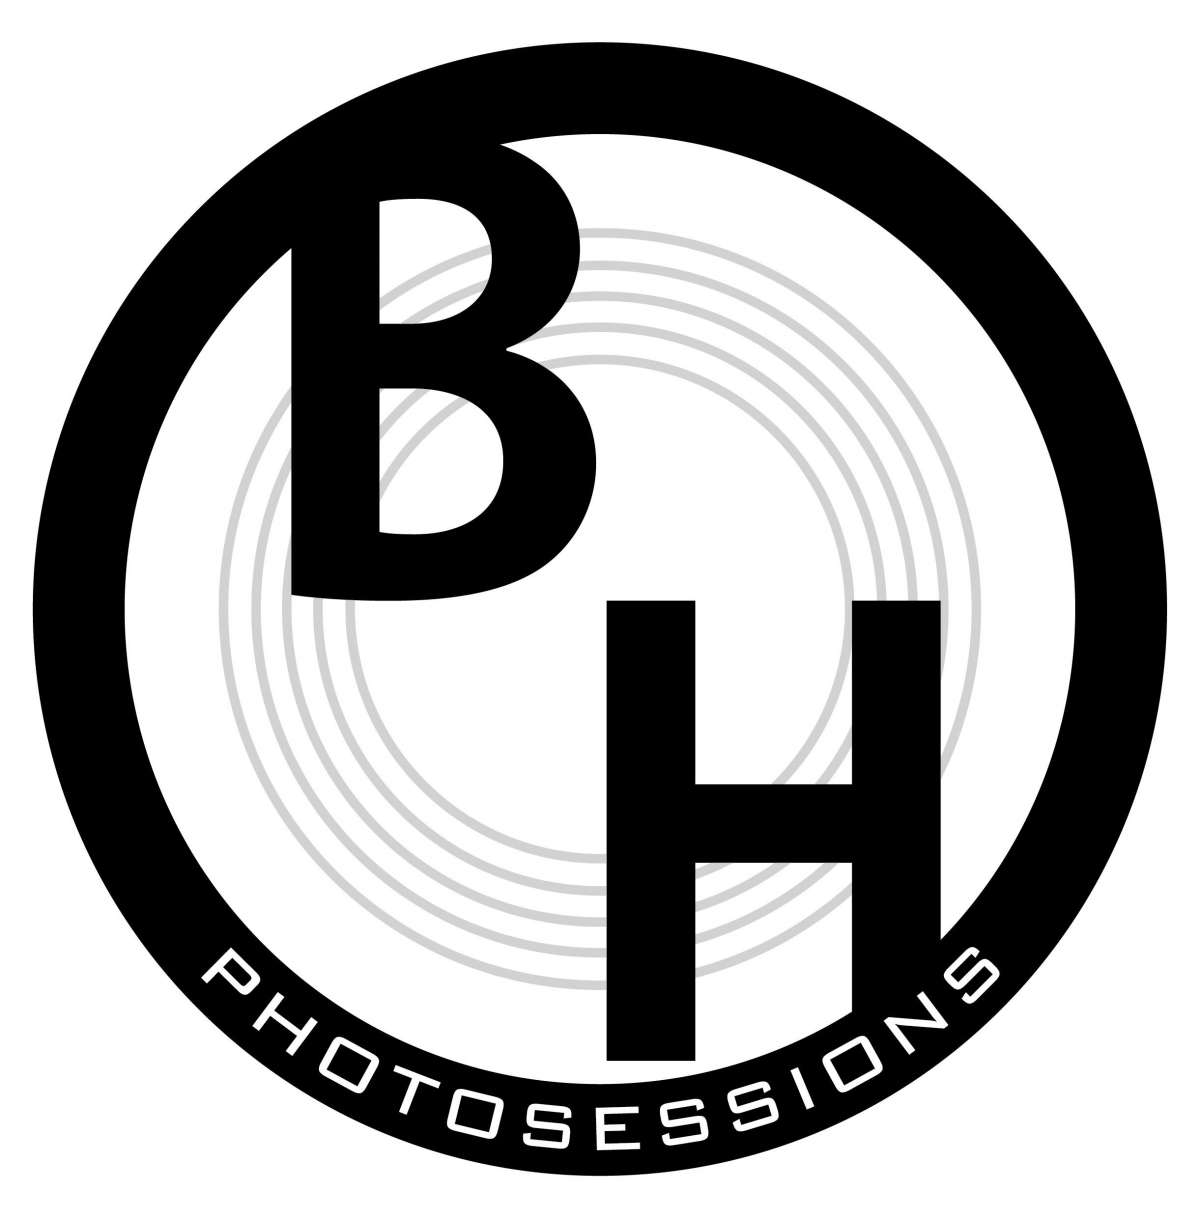 BH Photo Sessions - Porto - Fotografia Corporativa